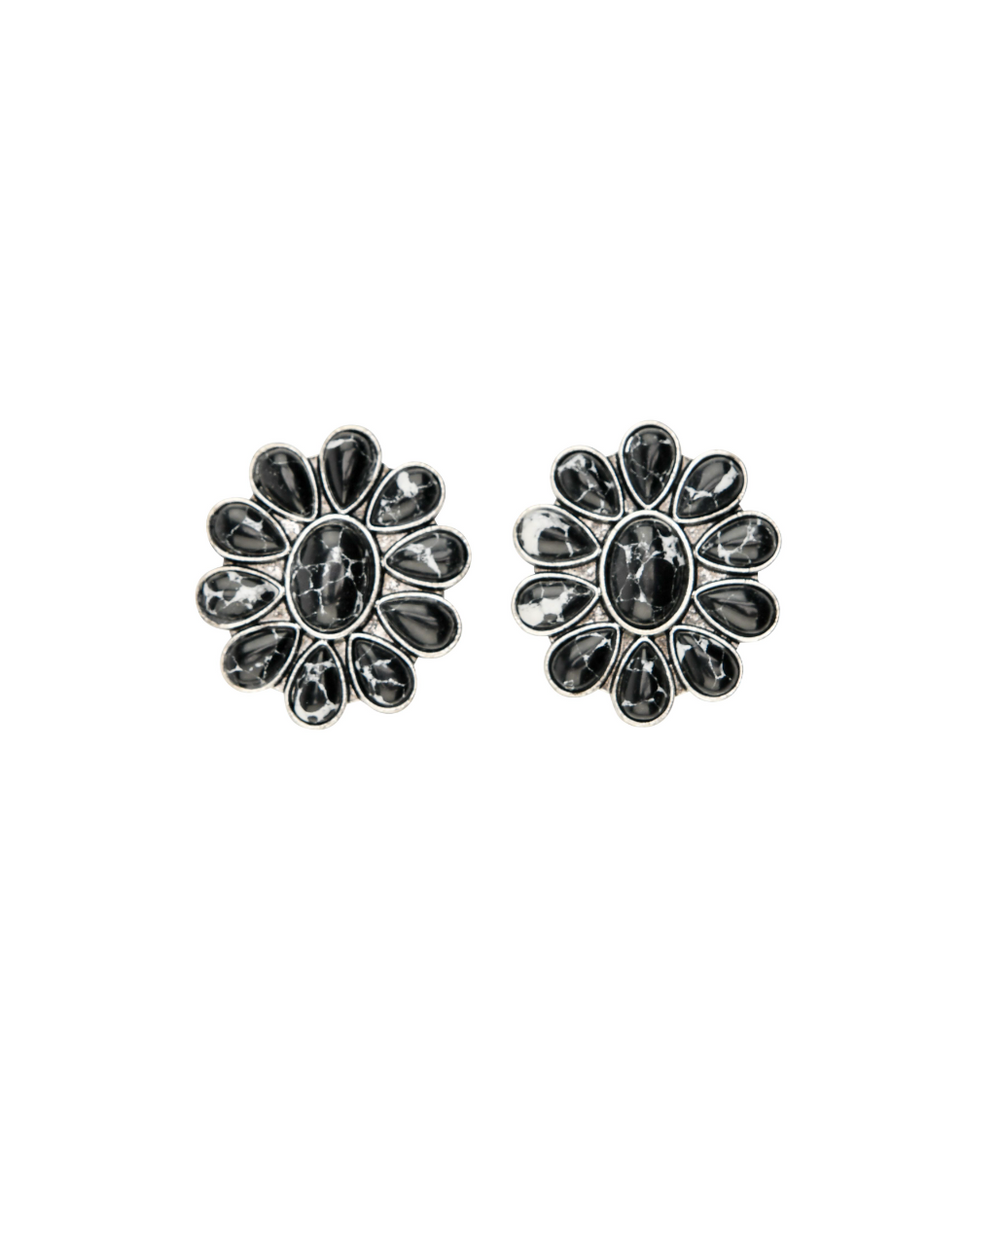 Black Flower Cluster Post Earrings